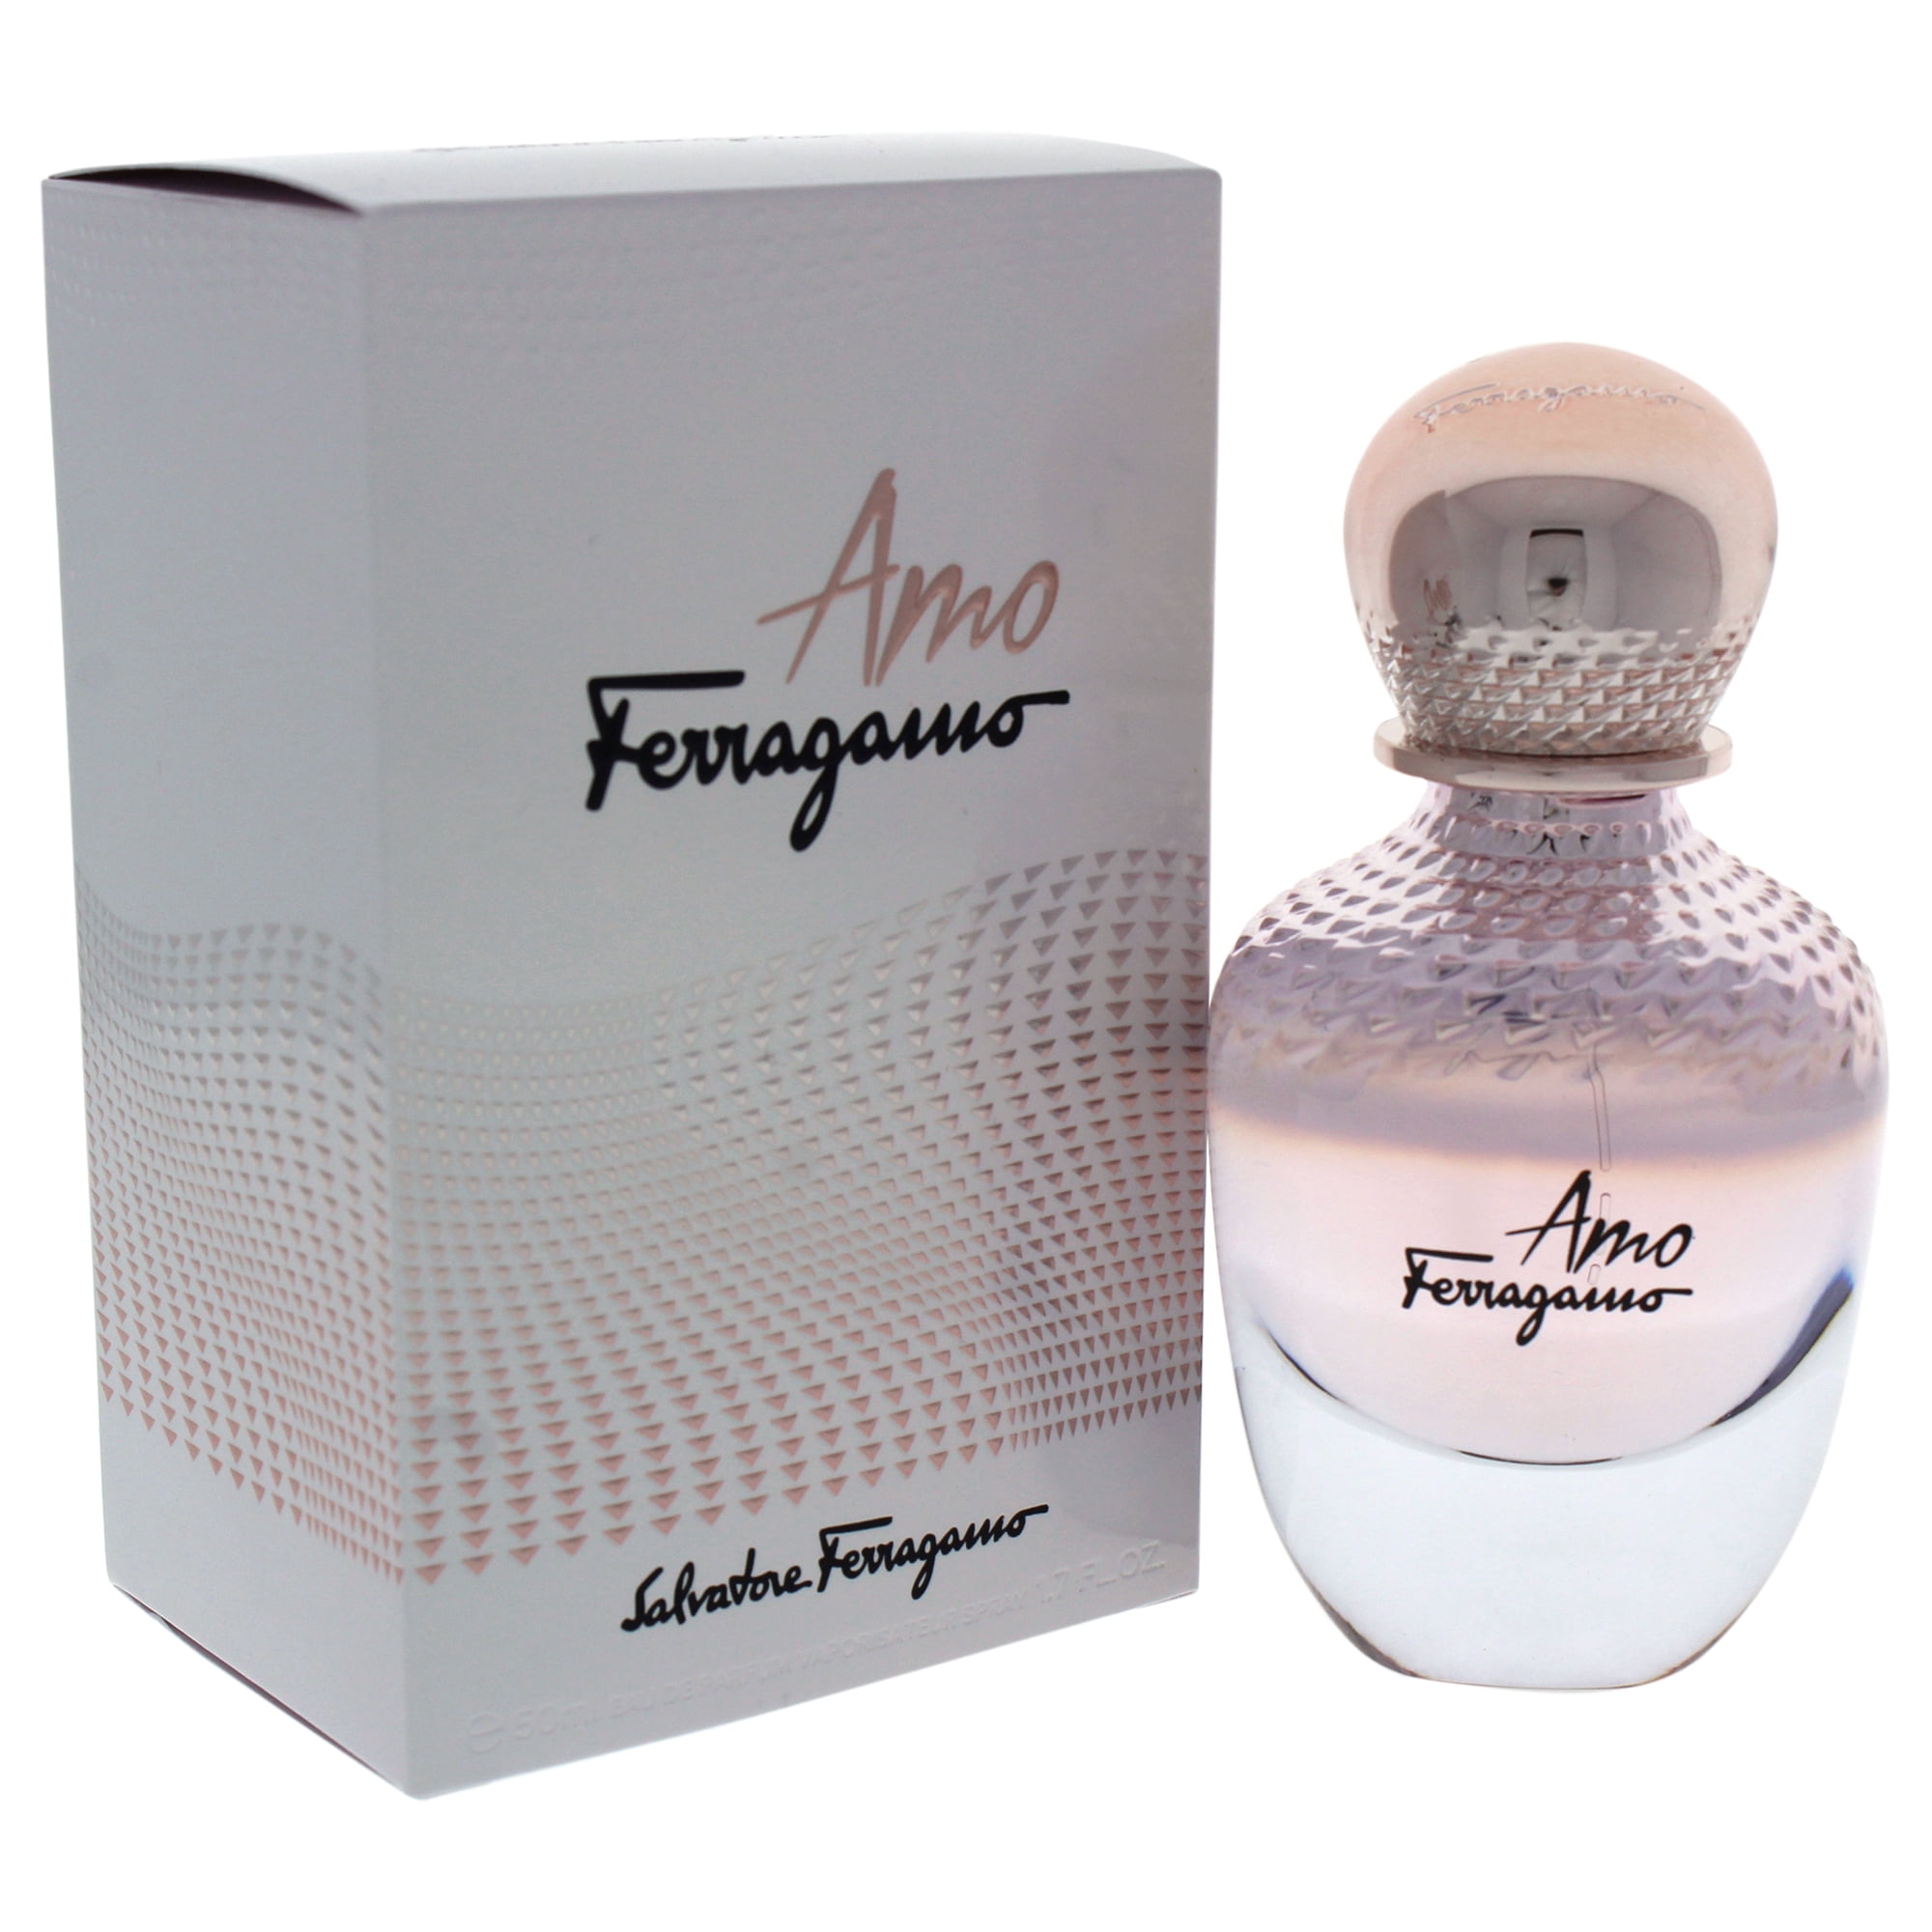 Salvatore Spray.New Box. Perfume Sealed Ferragamo oz.EDP 1.7 by in Ferragamo Amo